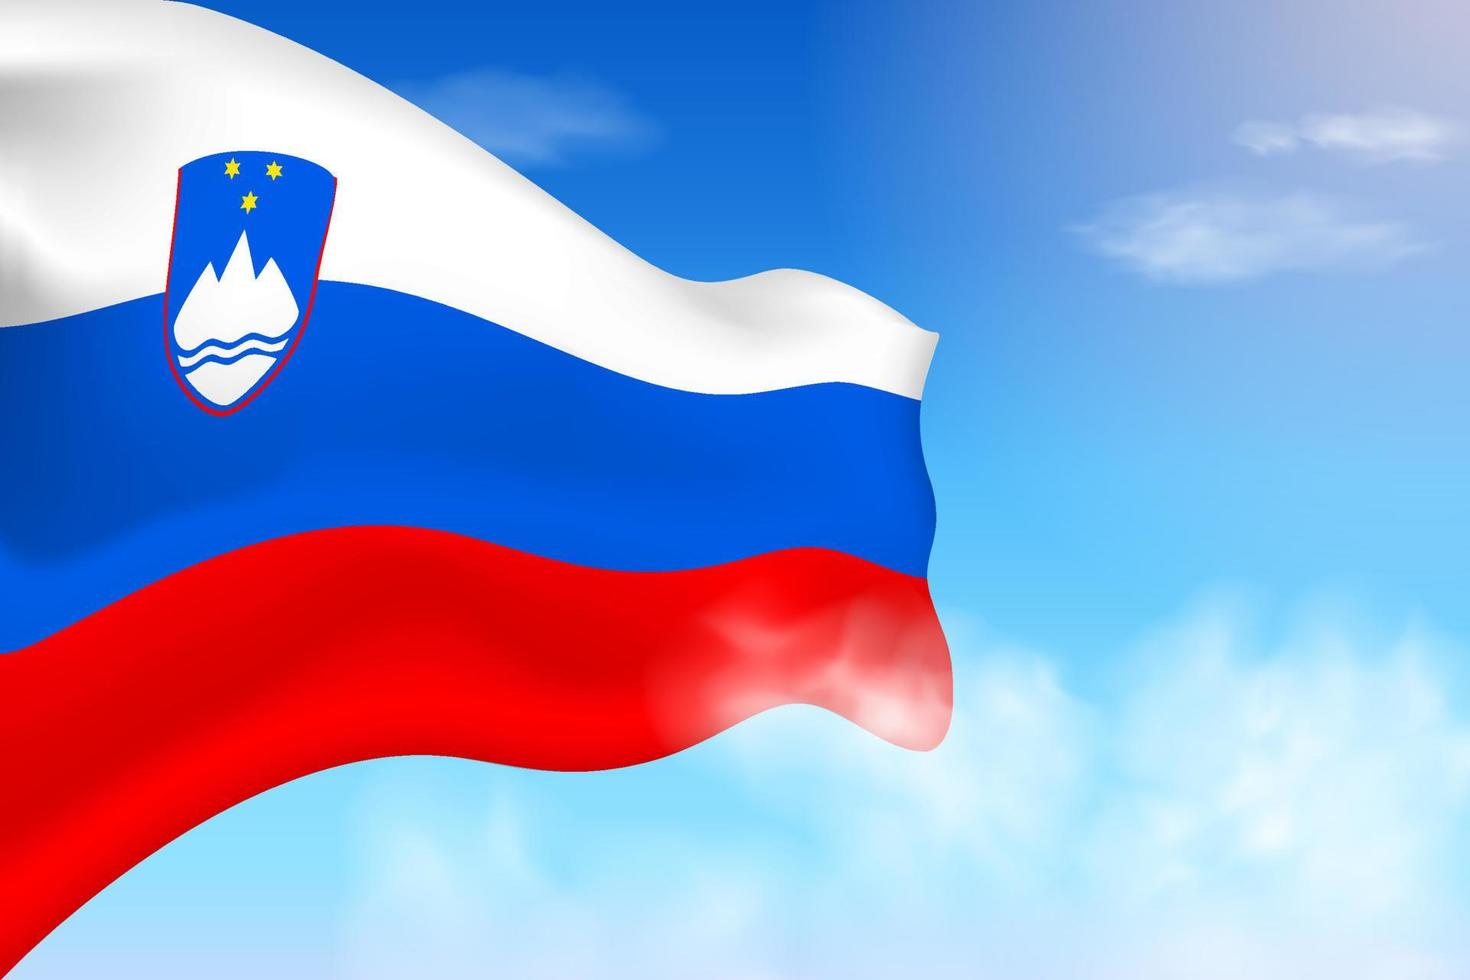 bandiera della slovenia tra le nuvole. bandiera vettoriale che sventola nel cielo. illustrazione realistica della bandiera della giornata nazionale. vettore di cielo blu.